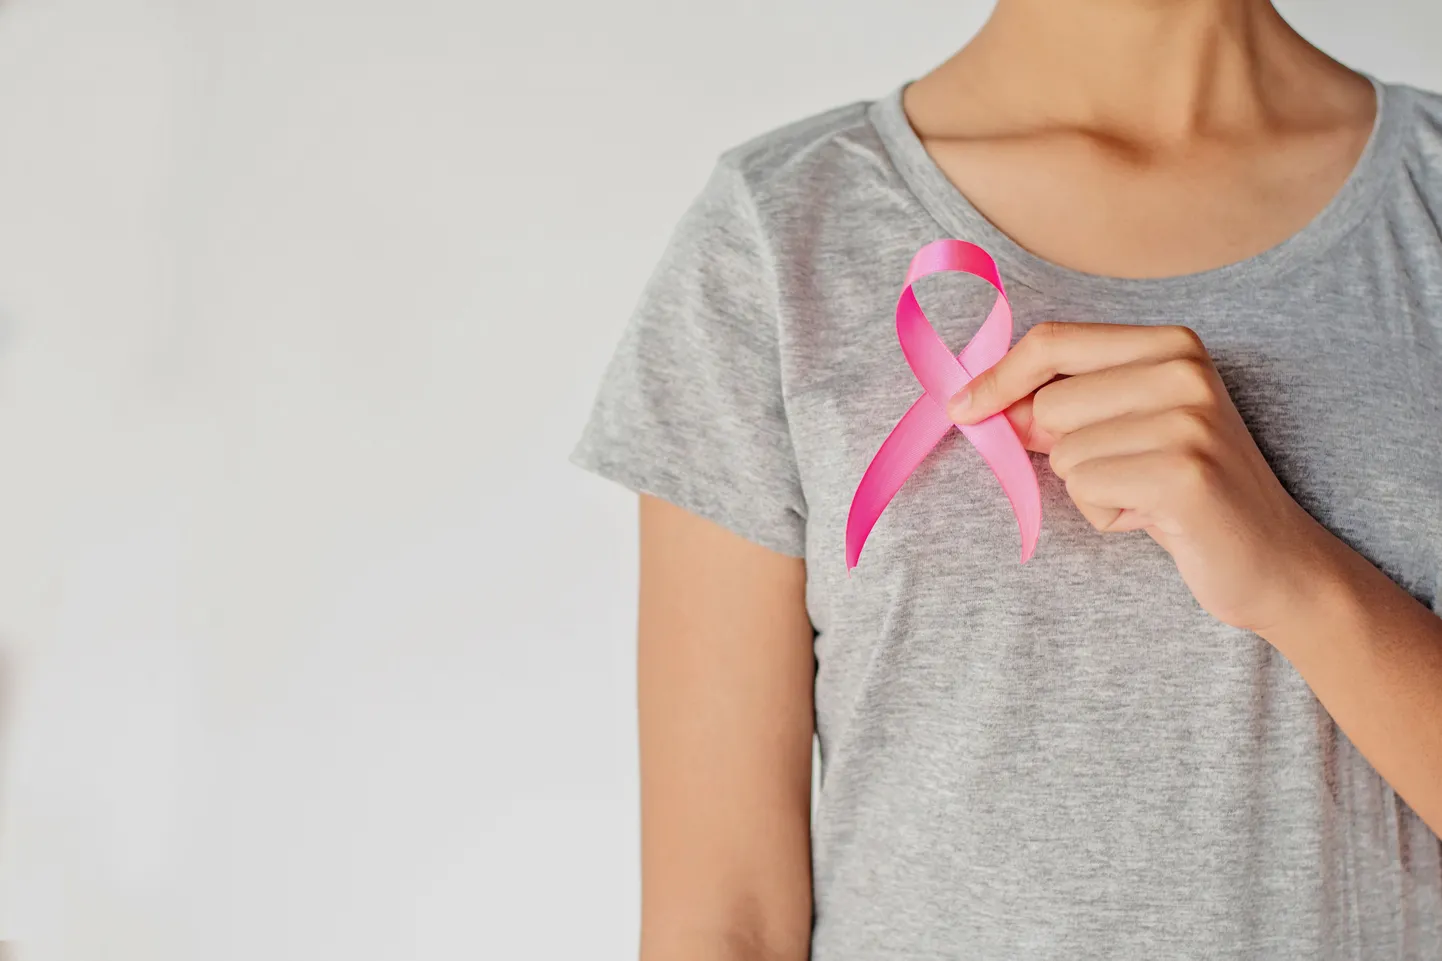 Розовая лента, как символ борьбы против рака молочной железы.